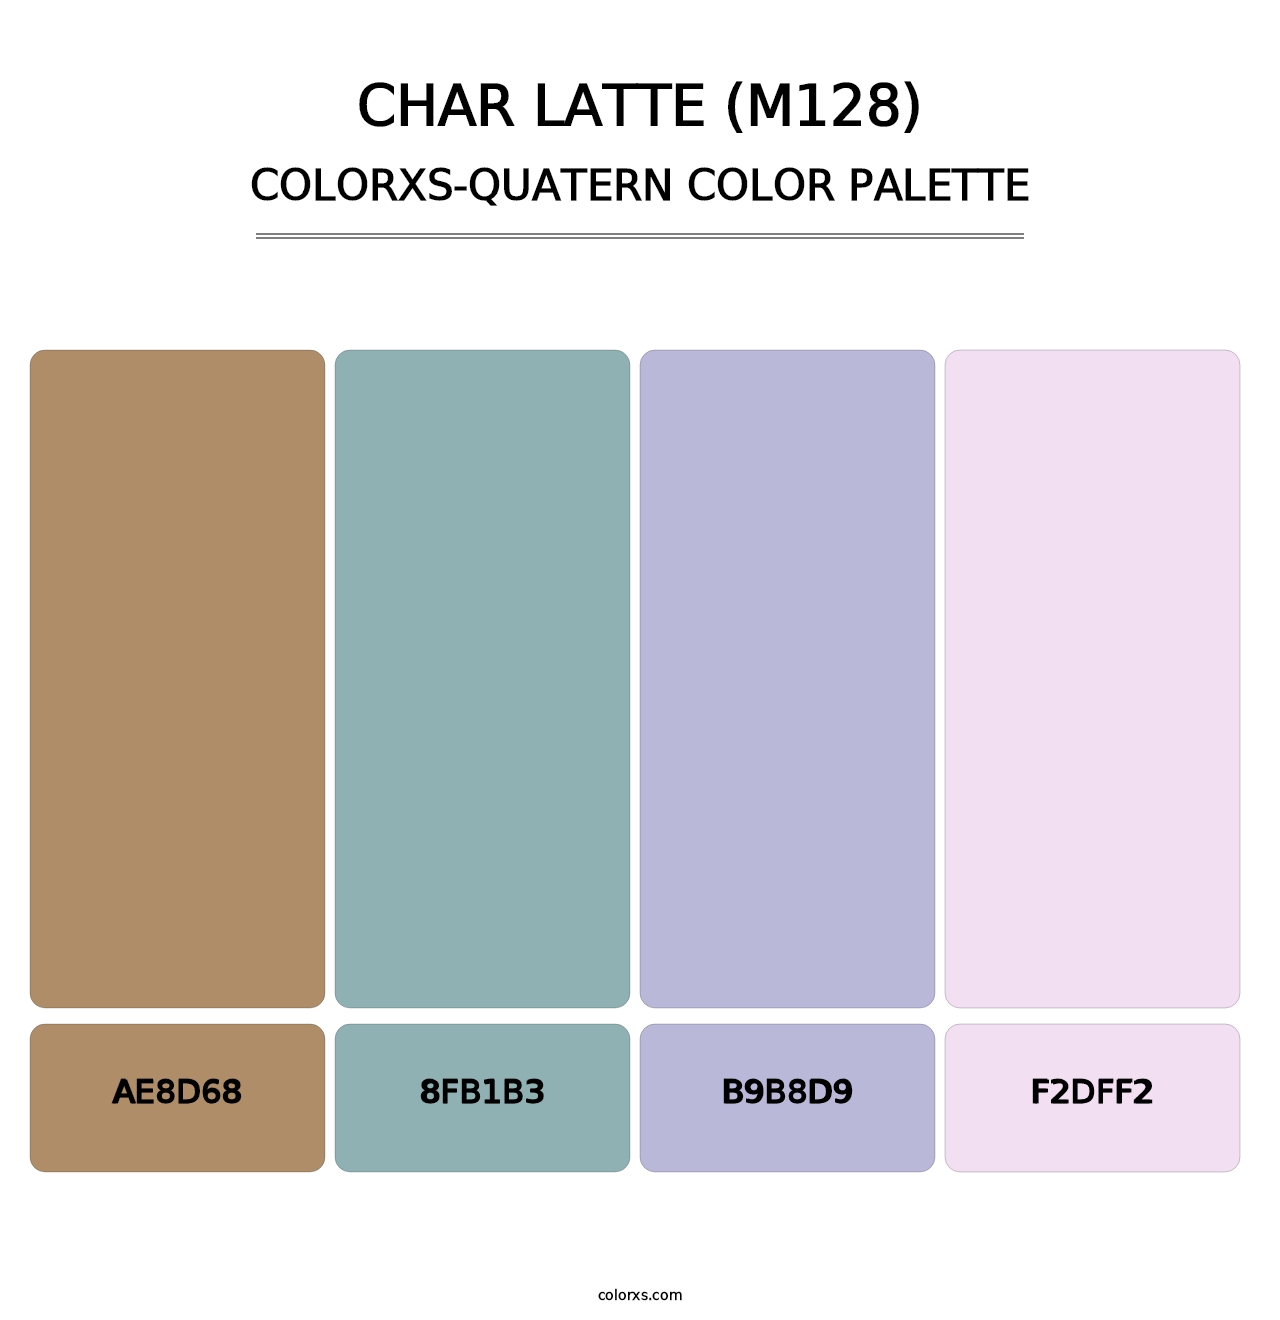 Char Latte (M128) - Colorxs Quatern Palette